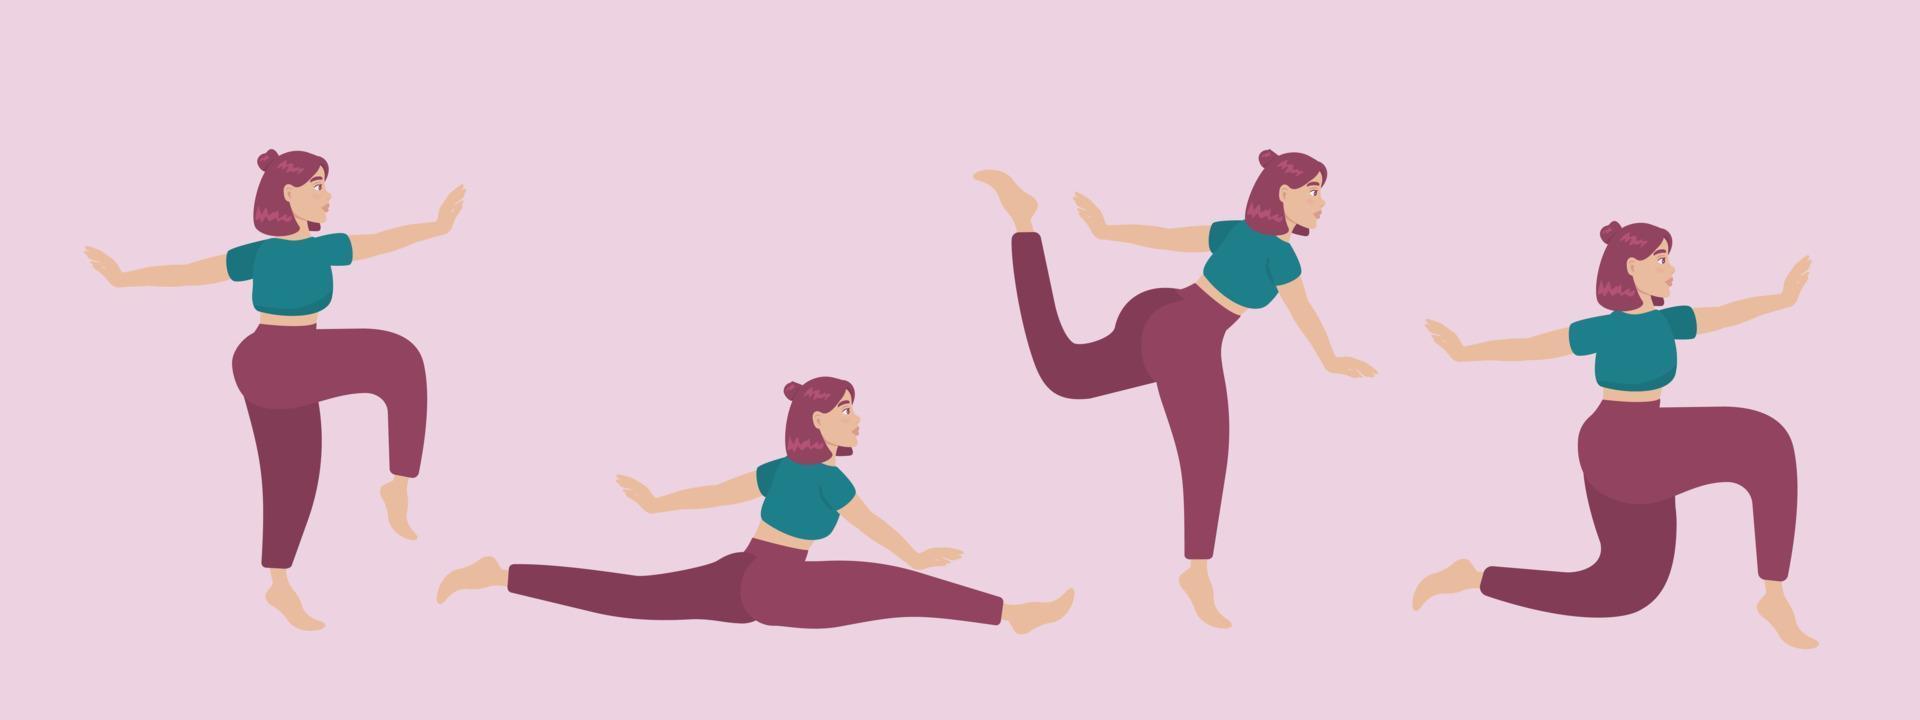 uppsättning vektor silhuetter av kvinna gör yoga övningar. färgade ikoner av en flicka i många olika yogaställningar isolerad på rosa bakgrund. yogakomplex. konditionsträning.